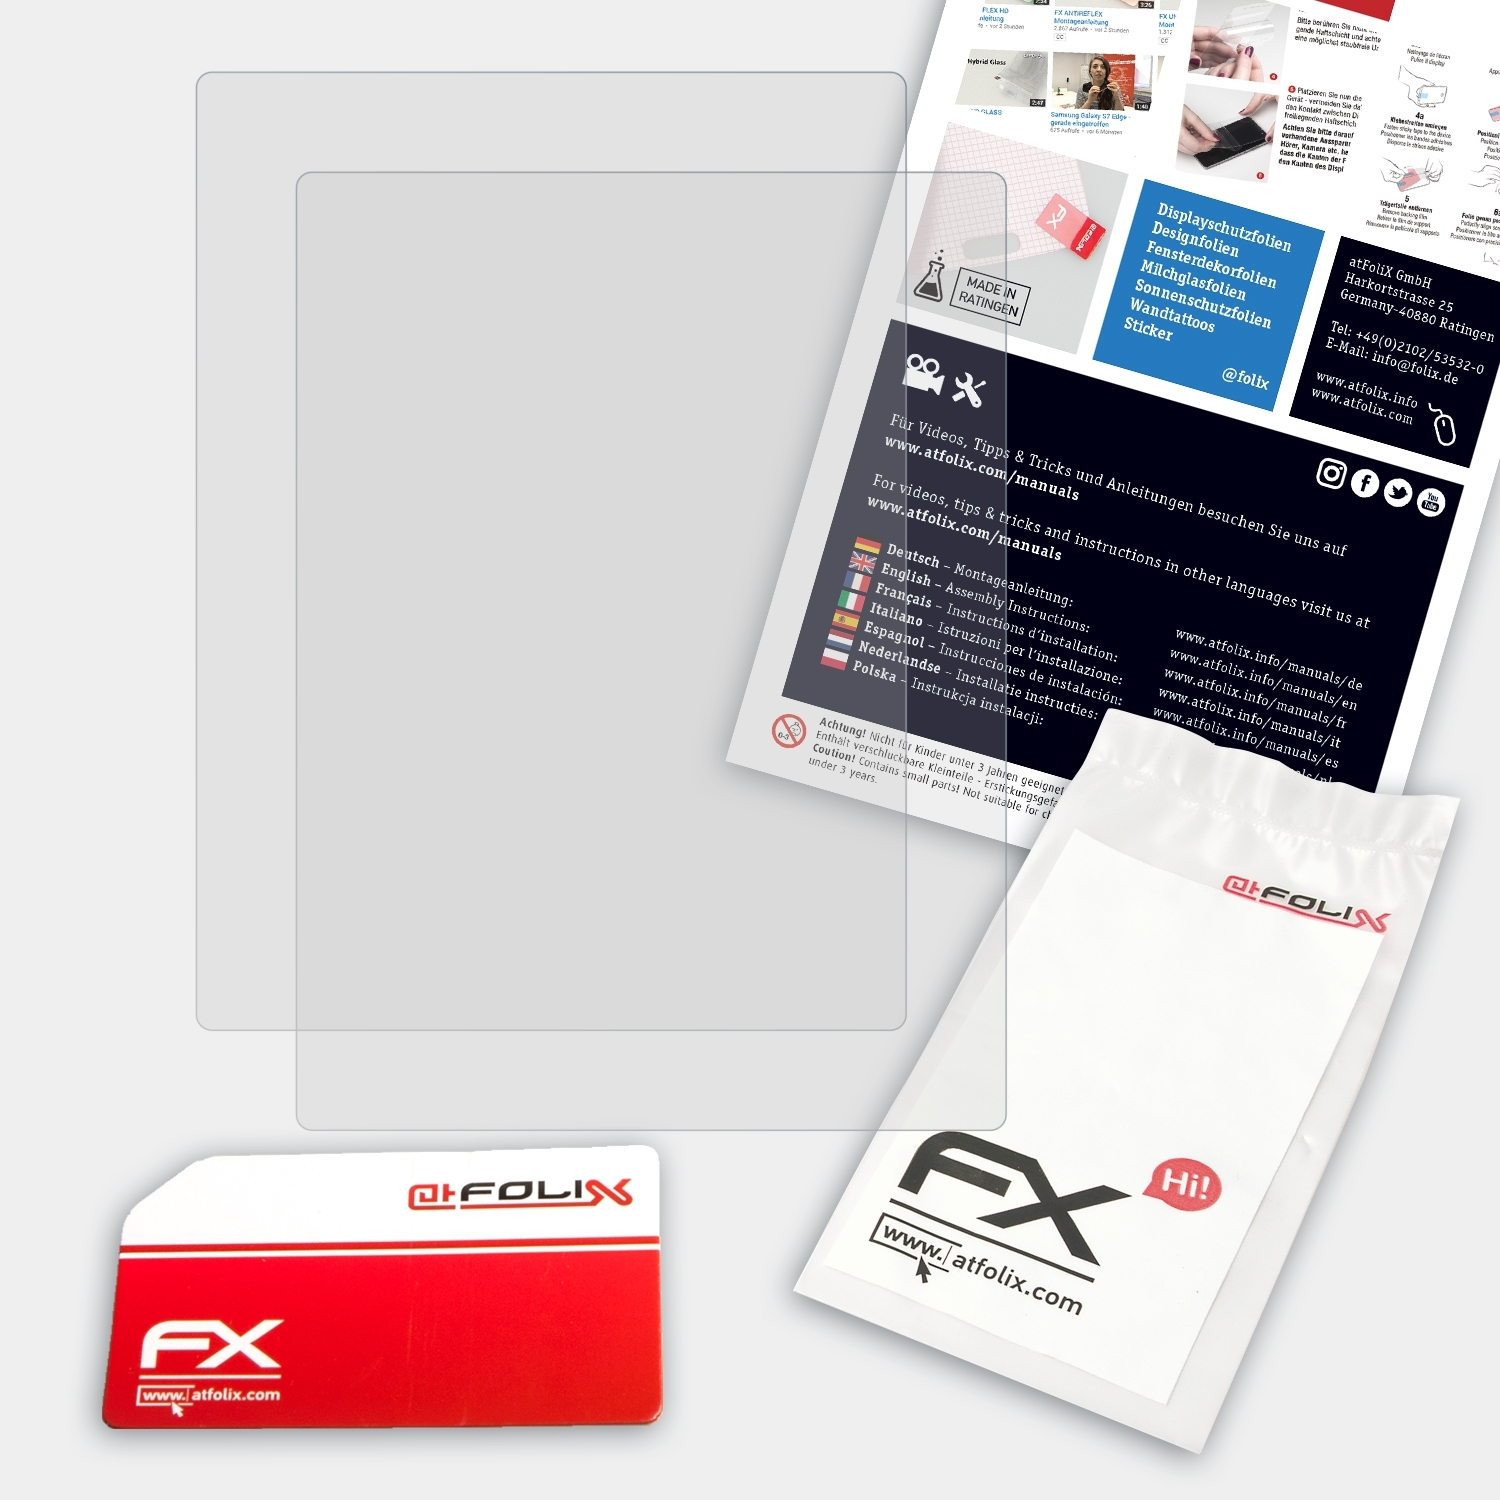 Displayschutz(für 2.0) ATFOLIX FX-Antireflex Touch 2x Kobo